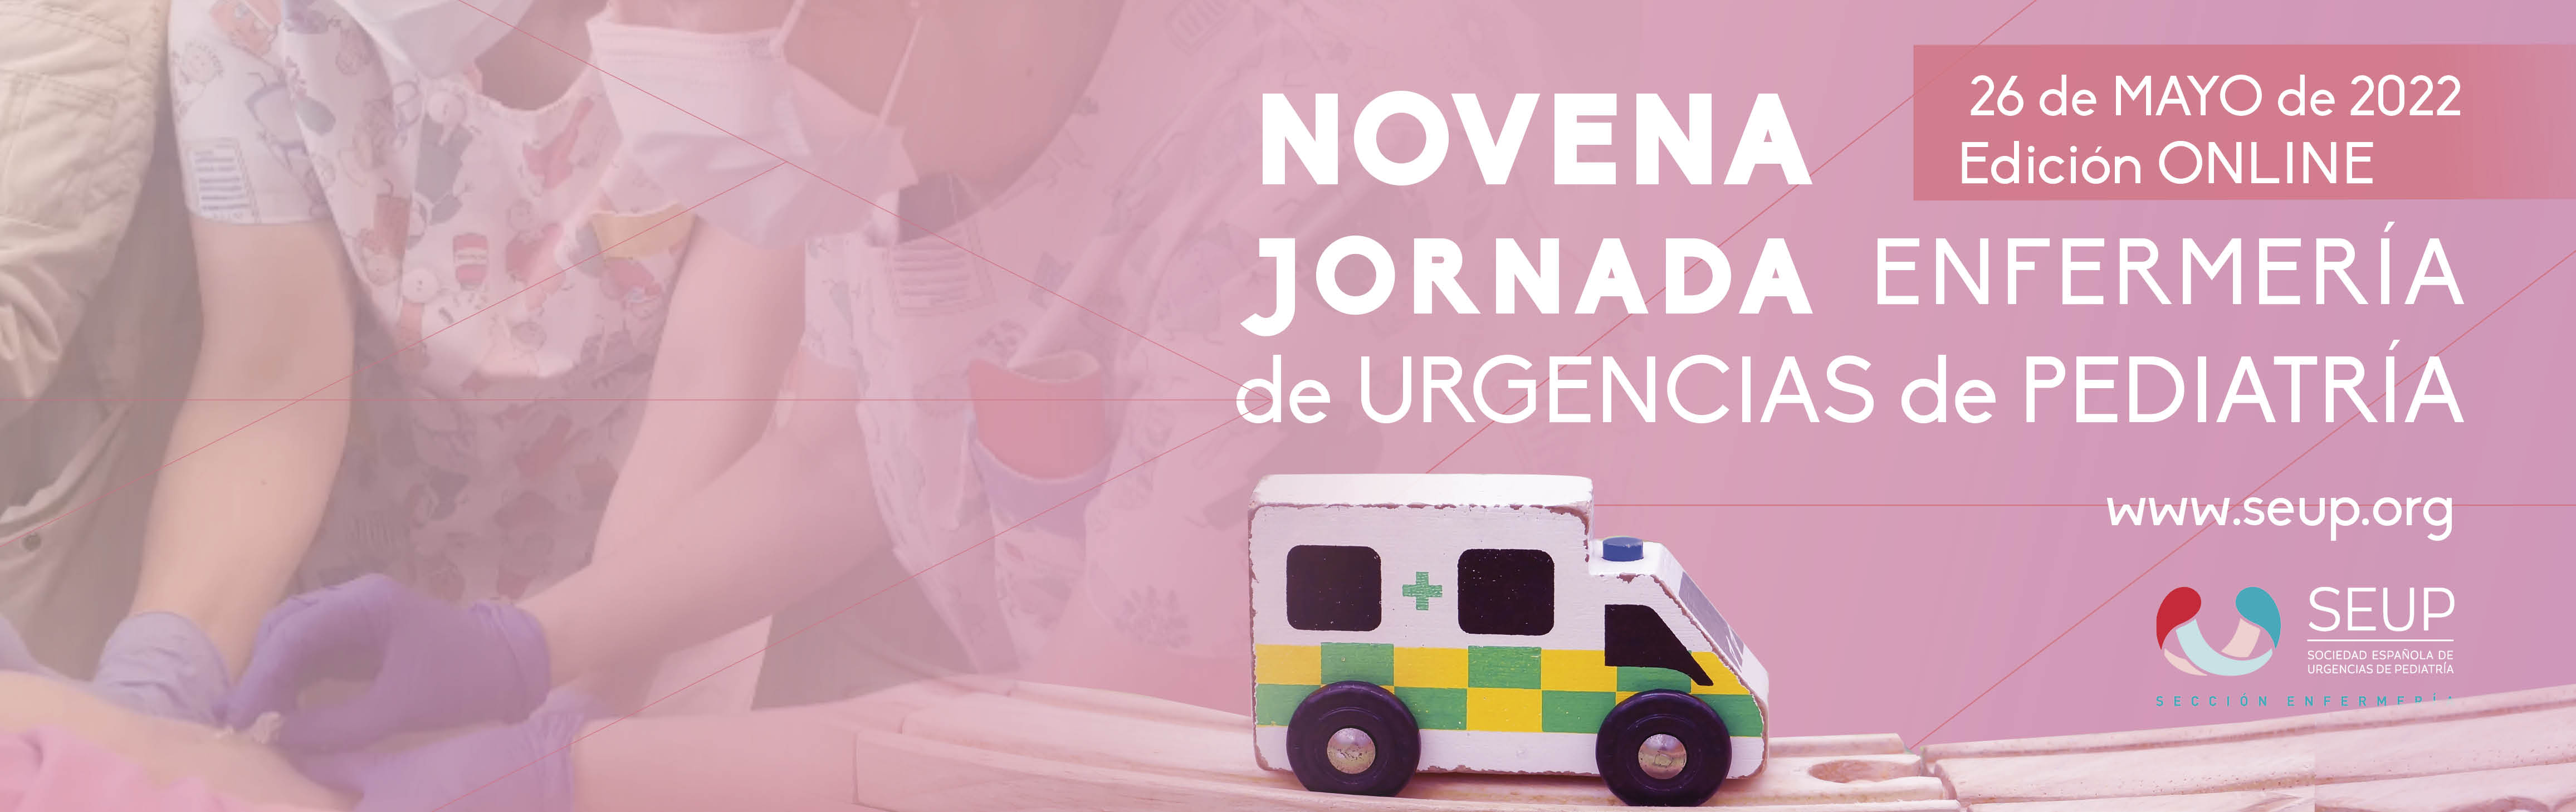 Jornada de Enfermería de Urgencias Pediátricas (9ª Edición) @ Online